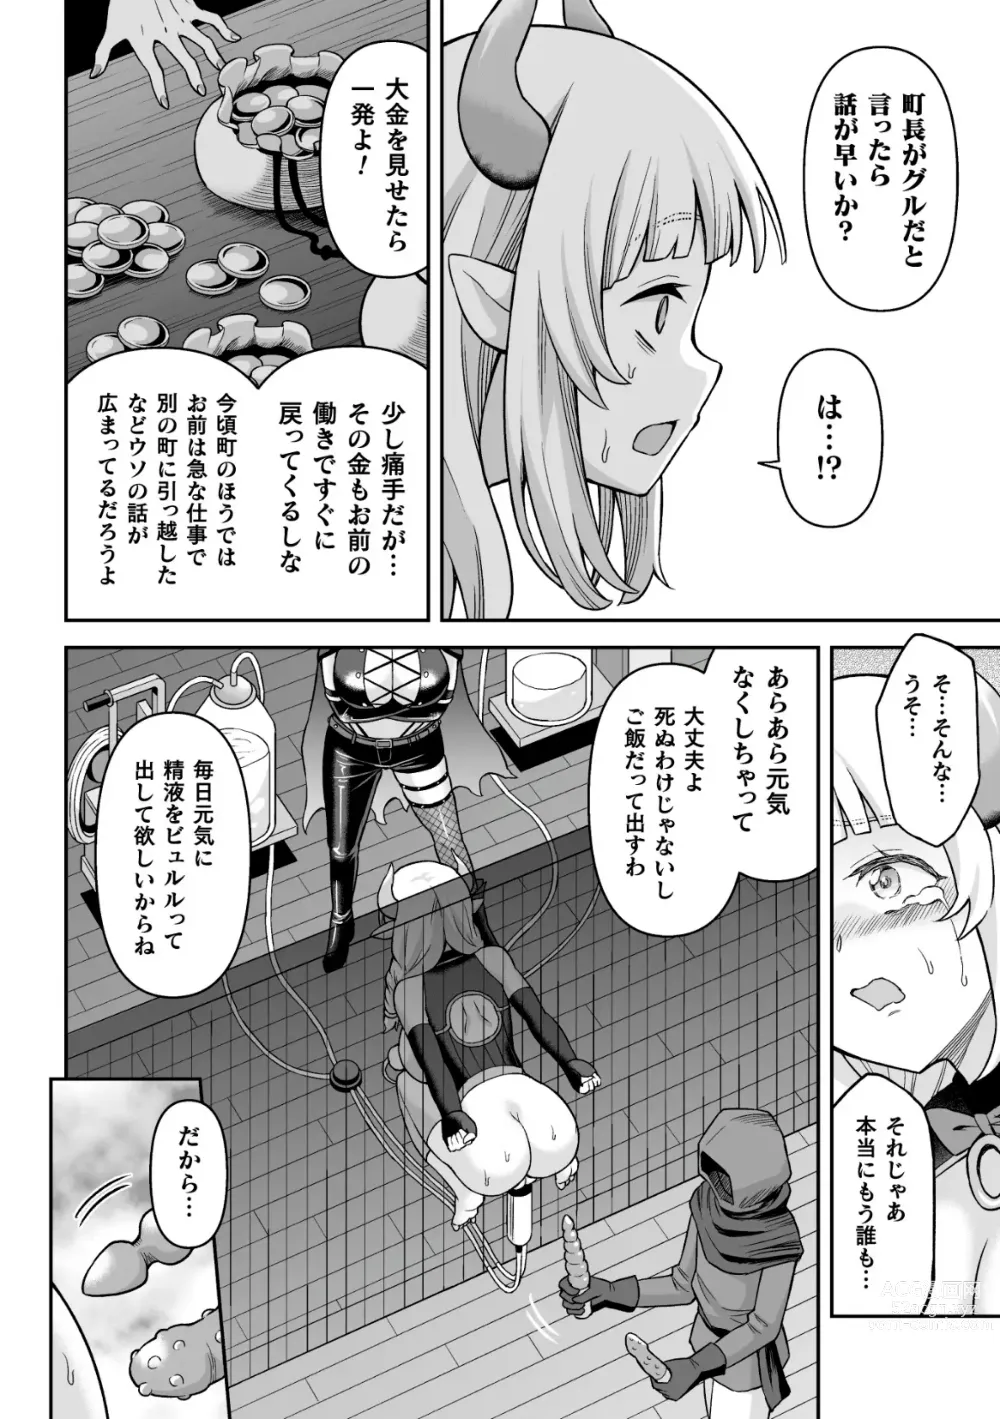 Page 30 of manga 2D Comic Magazine Futanari Kabe Sao Kabe Shiri Futanari Heroine Sakusei Iki Jigoku! Vol. 1